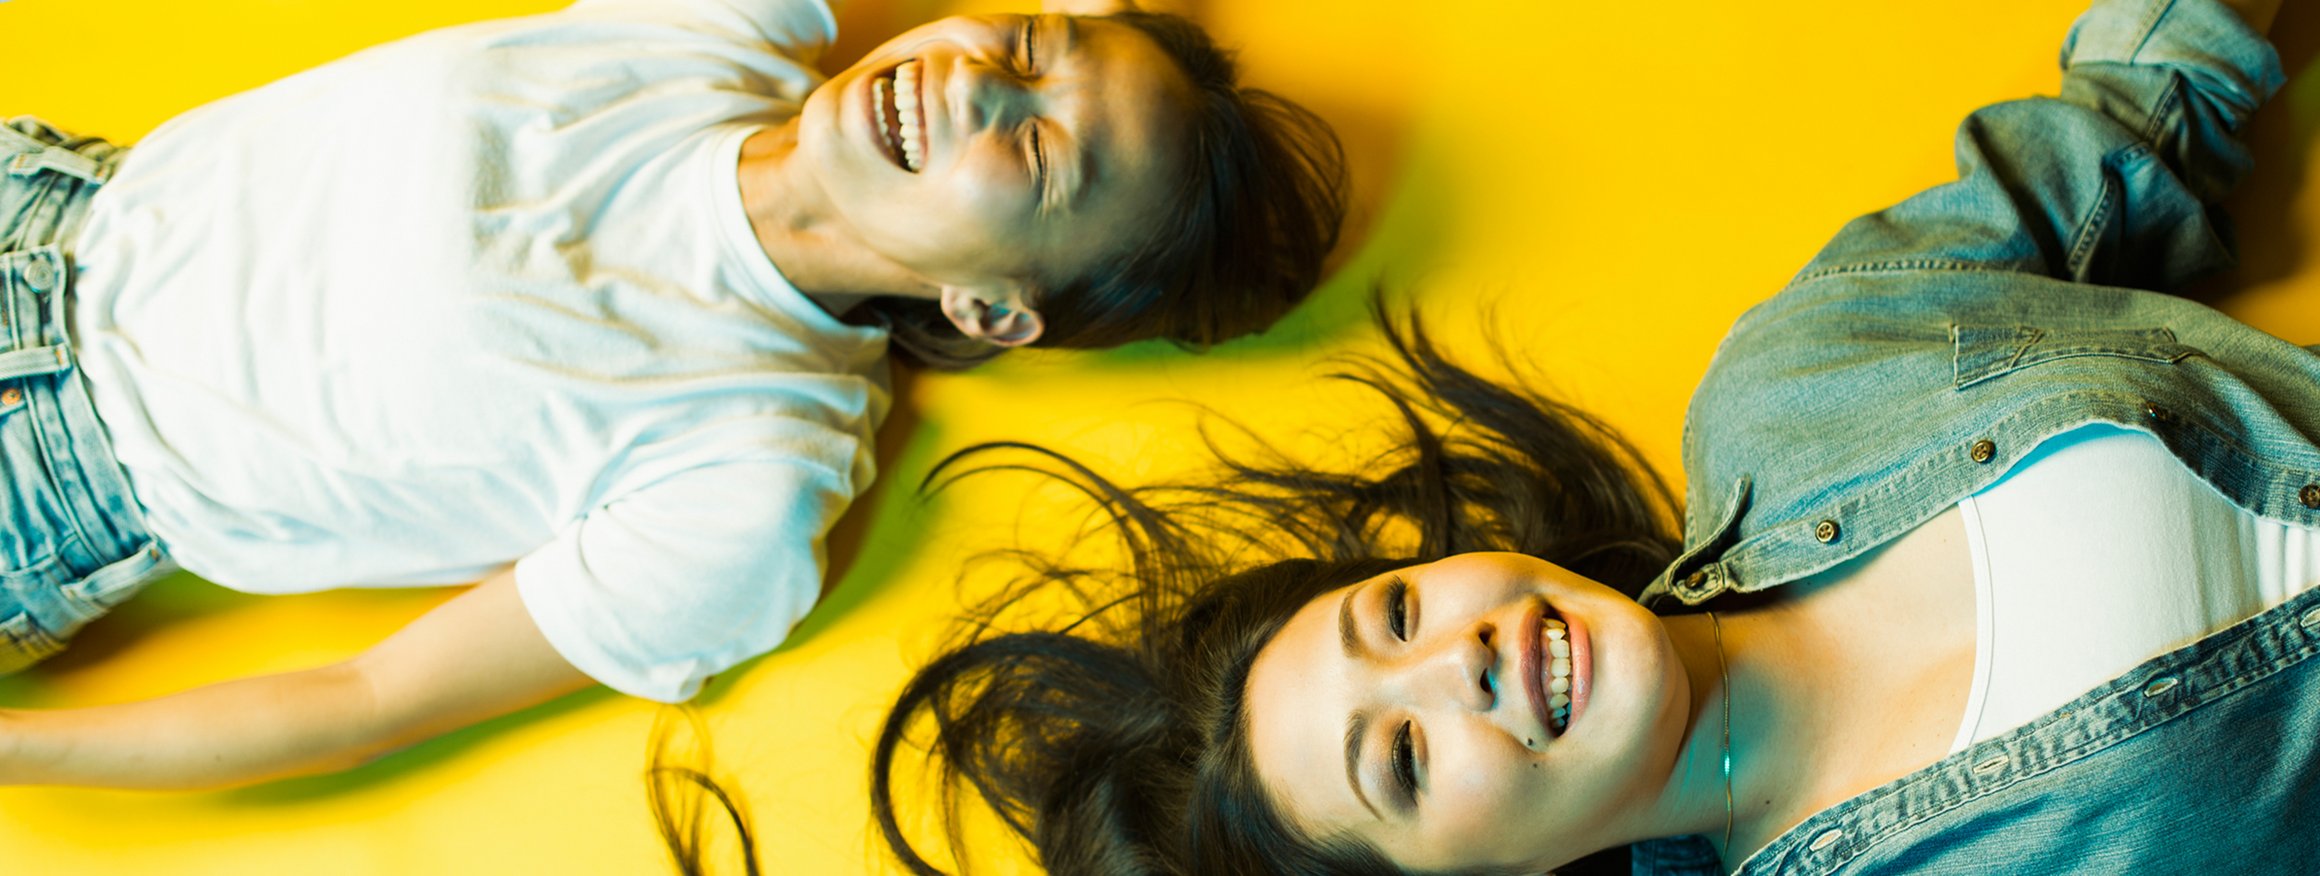 Zwei junge Frauen aus Japan liegen auf einem gelben Boden und lachen ausgelassen